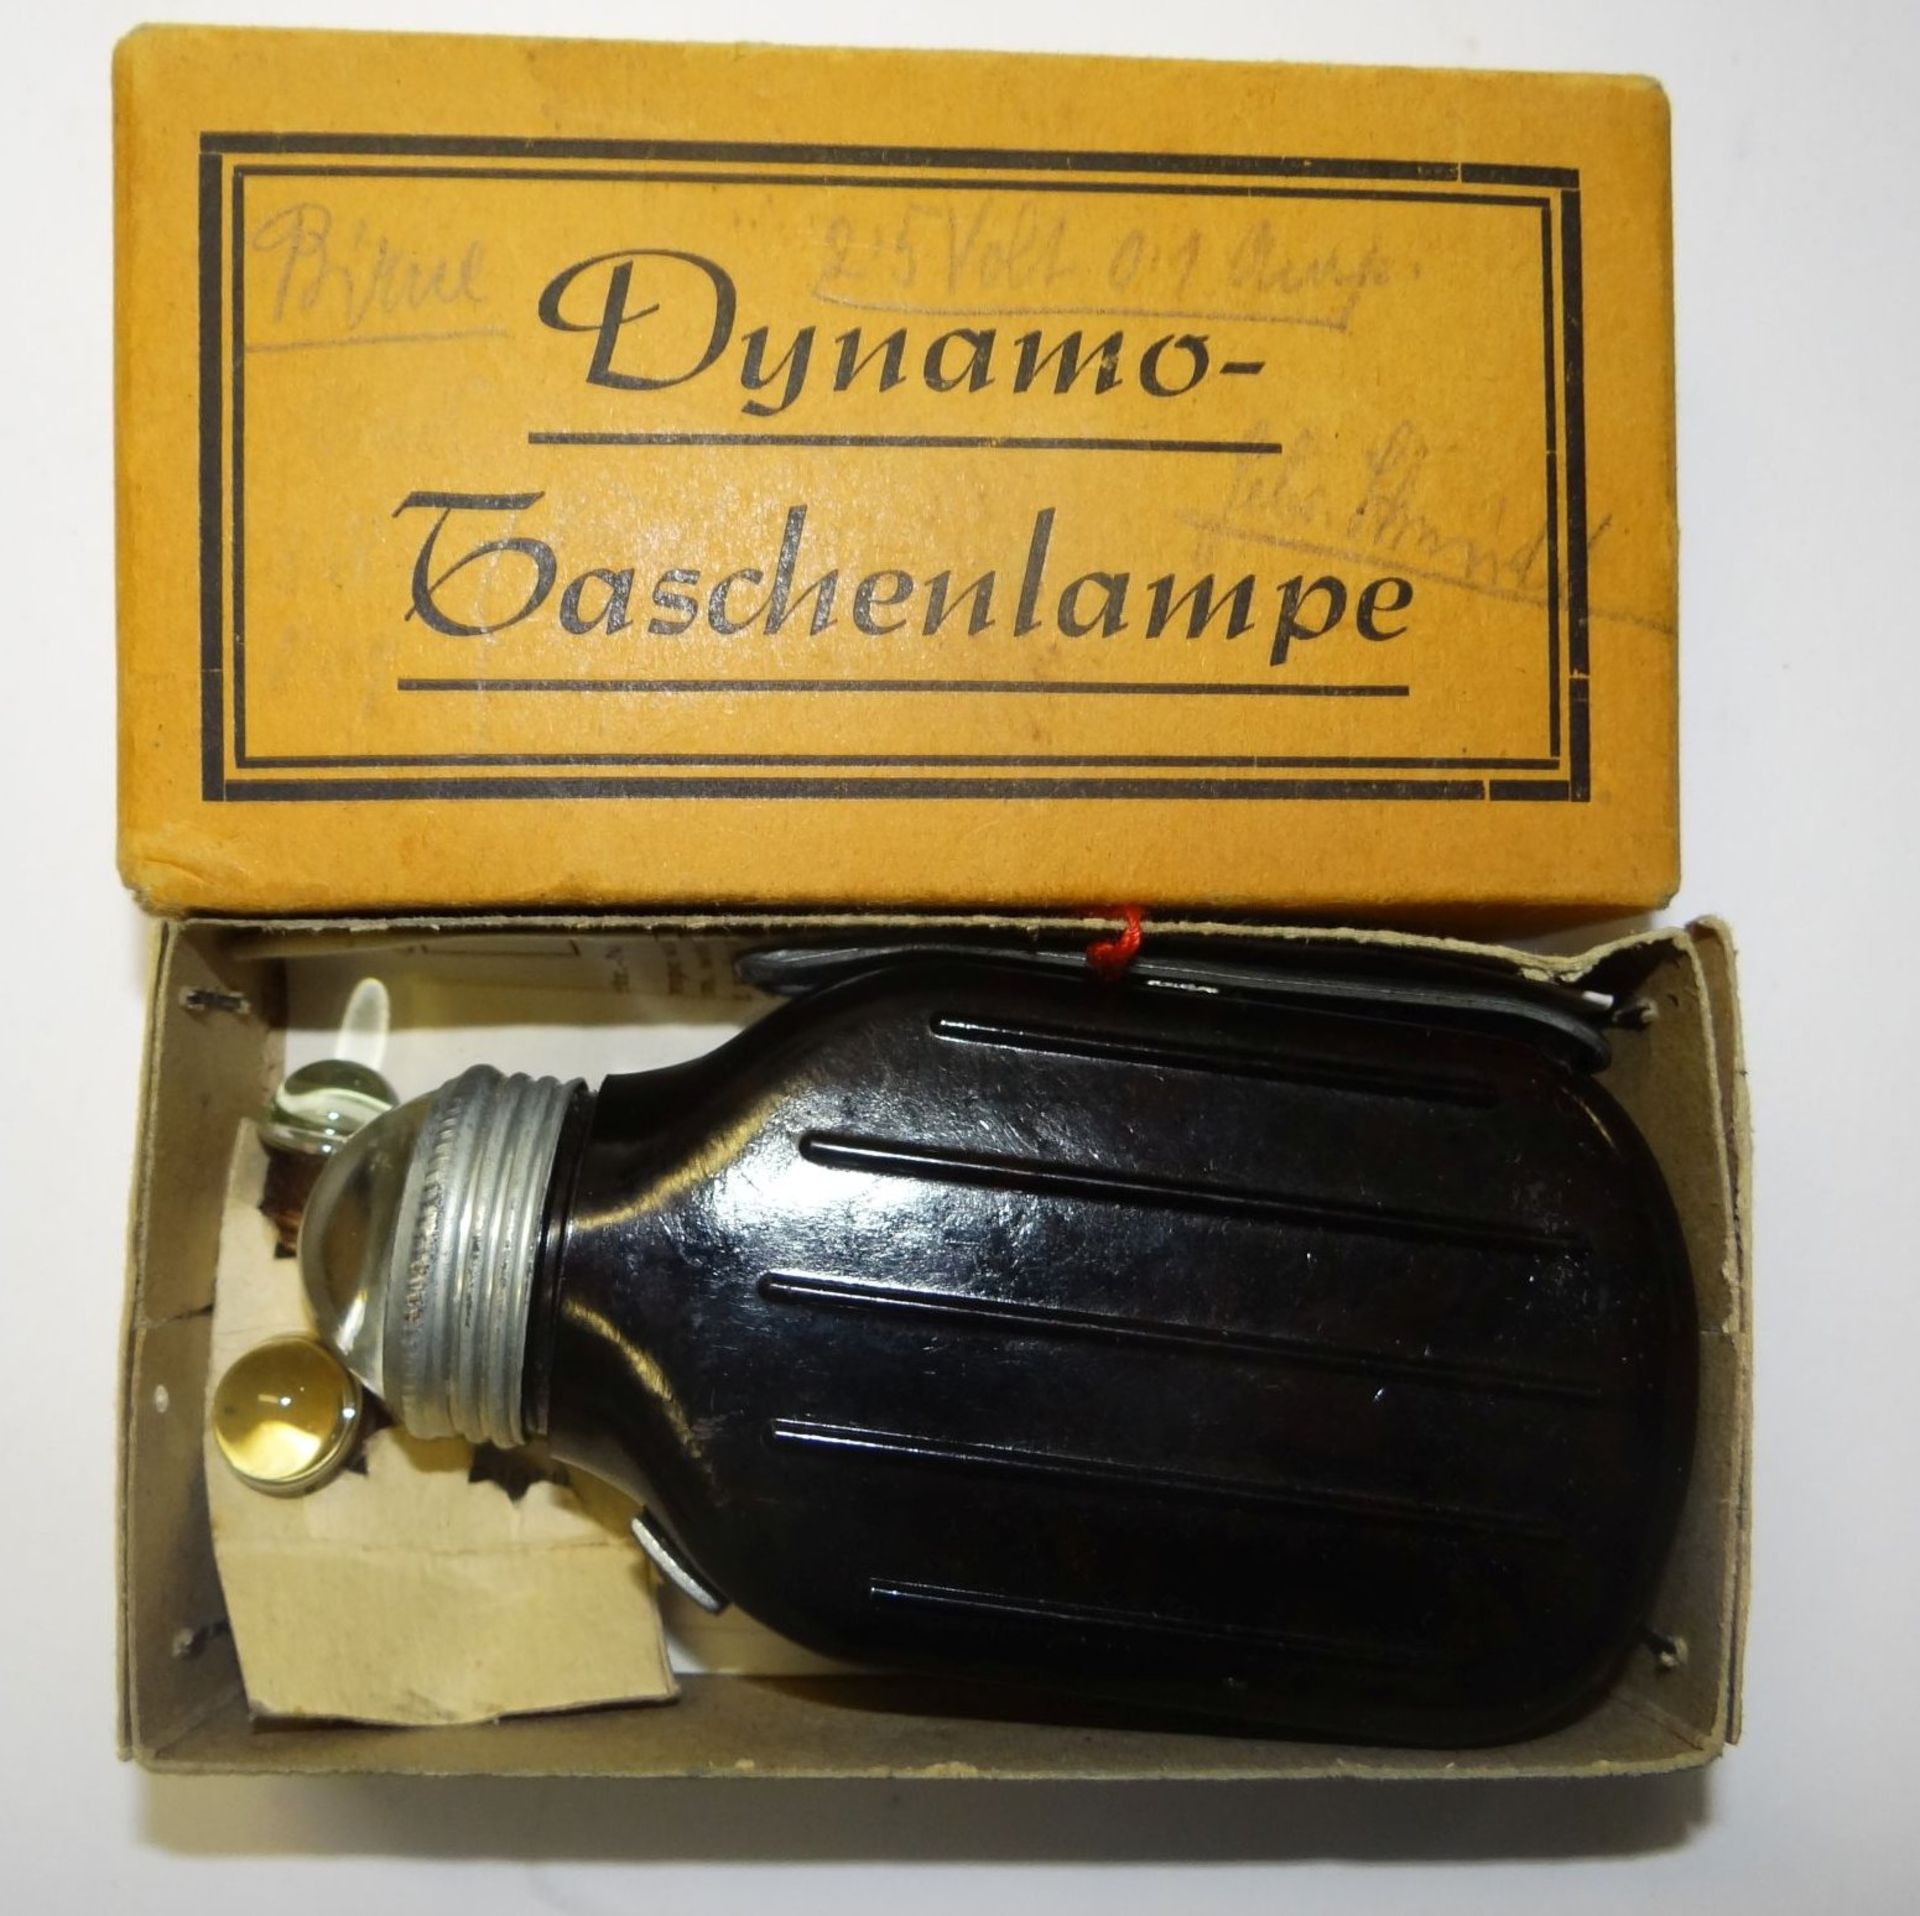 Dynamo-Handtaschenlampe in orig. Karton, Beschreibung, Ersatzbirnen, neuwertig und funktioniert